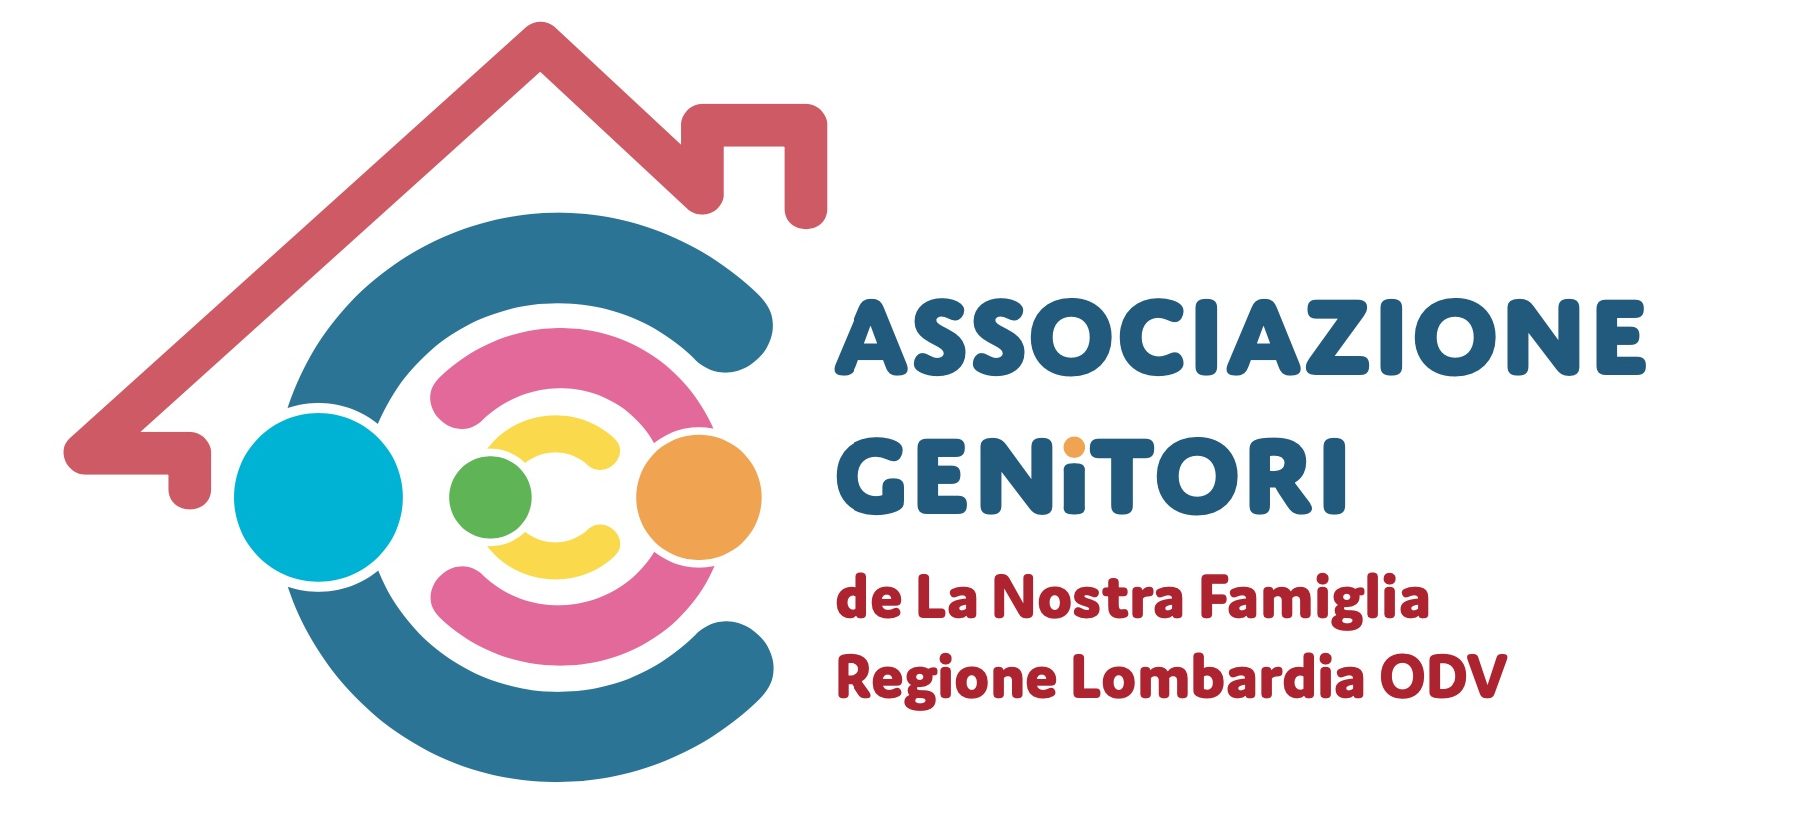 Associazione Genitori de La Nostra Famiglia Regione Lombardia ODV